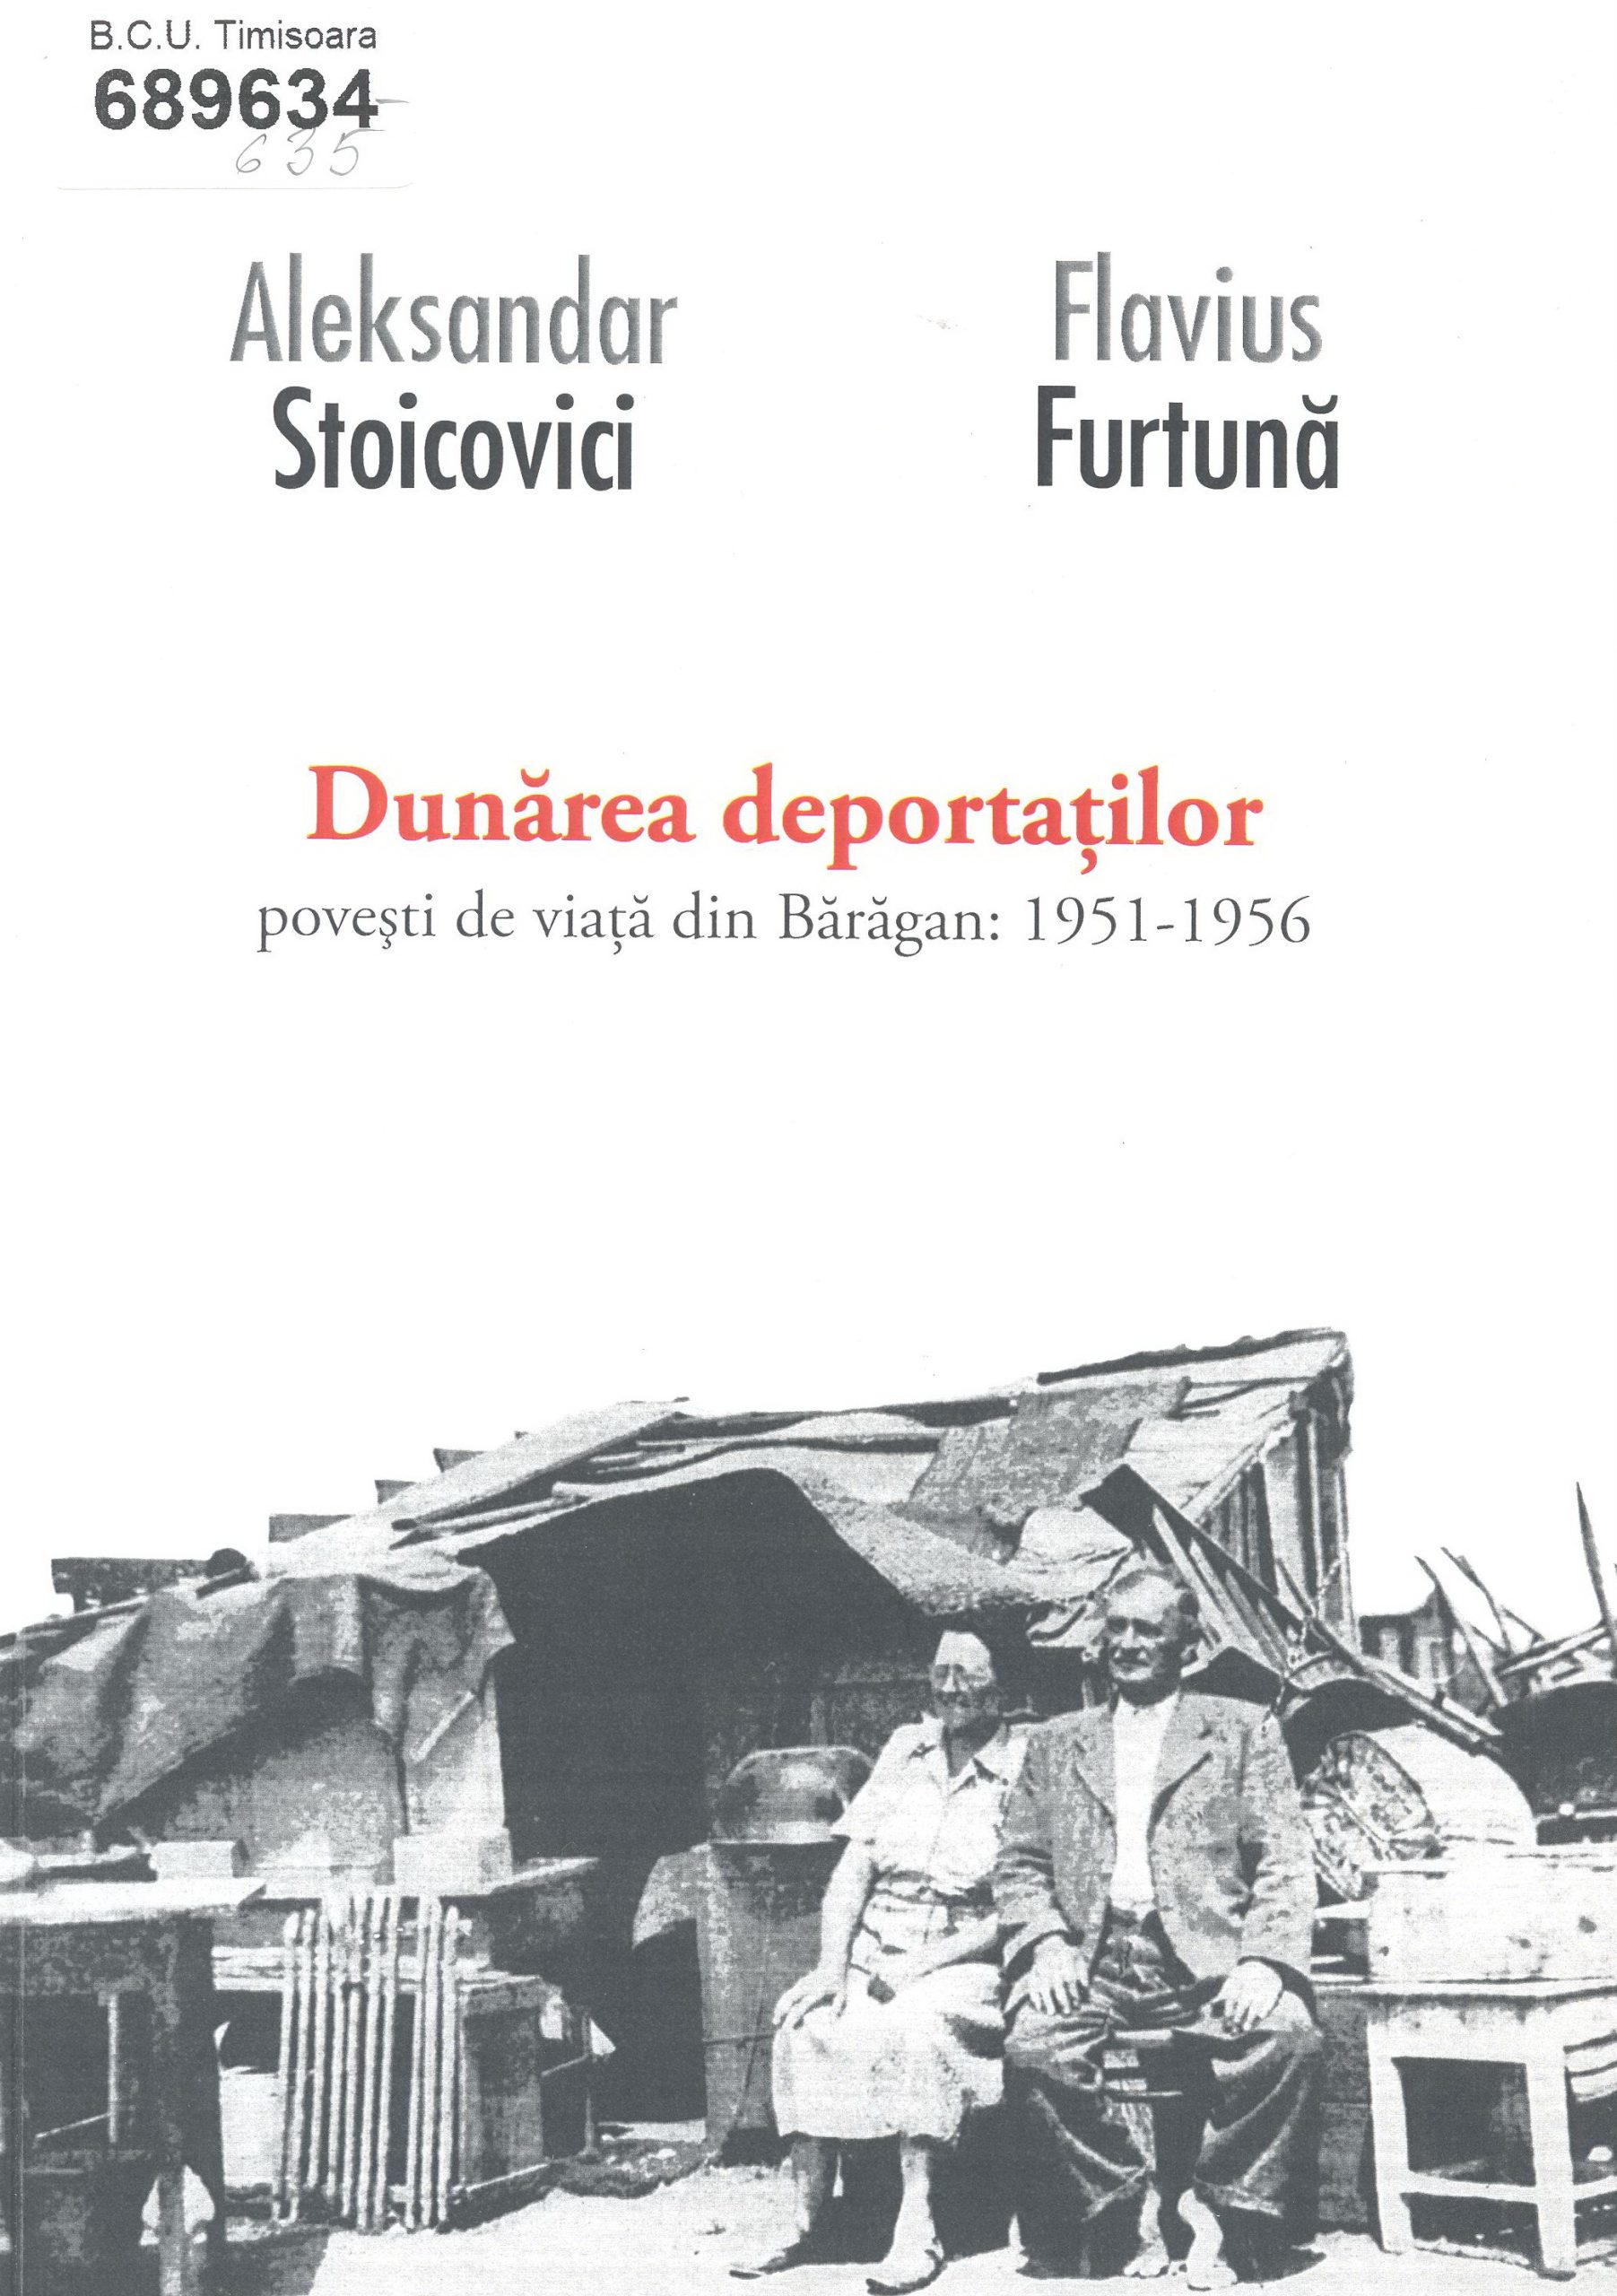 Copertă: 2013 - Aleksandar Stoicovici, Flavius Furtună - Dunărea deportaţilor. Poveşti de viaţă din Bărăgan 1951-1956